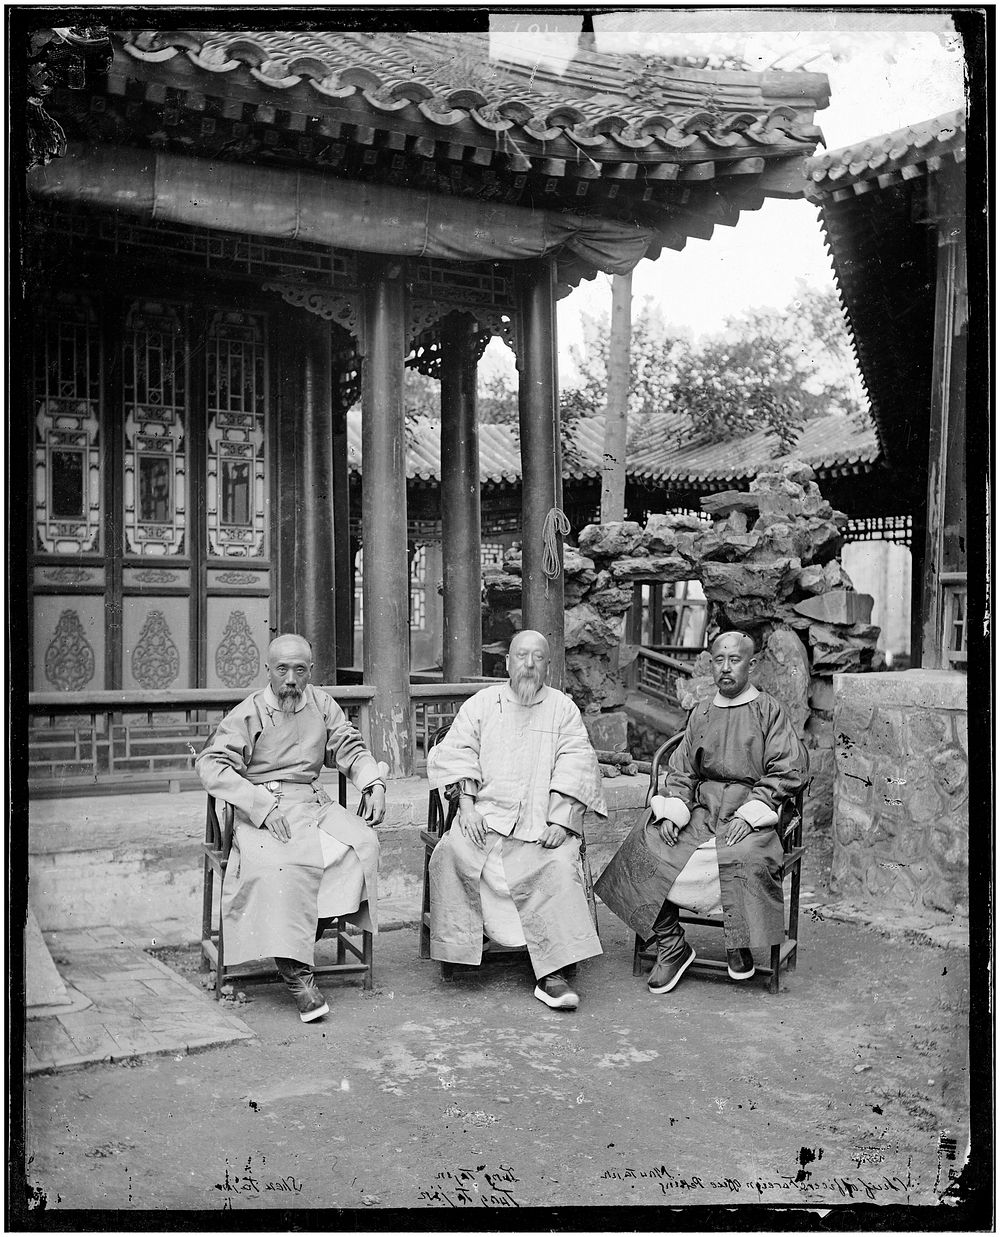 Peking, Pechili province, China. Photograph by John Thomson, 1869.